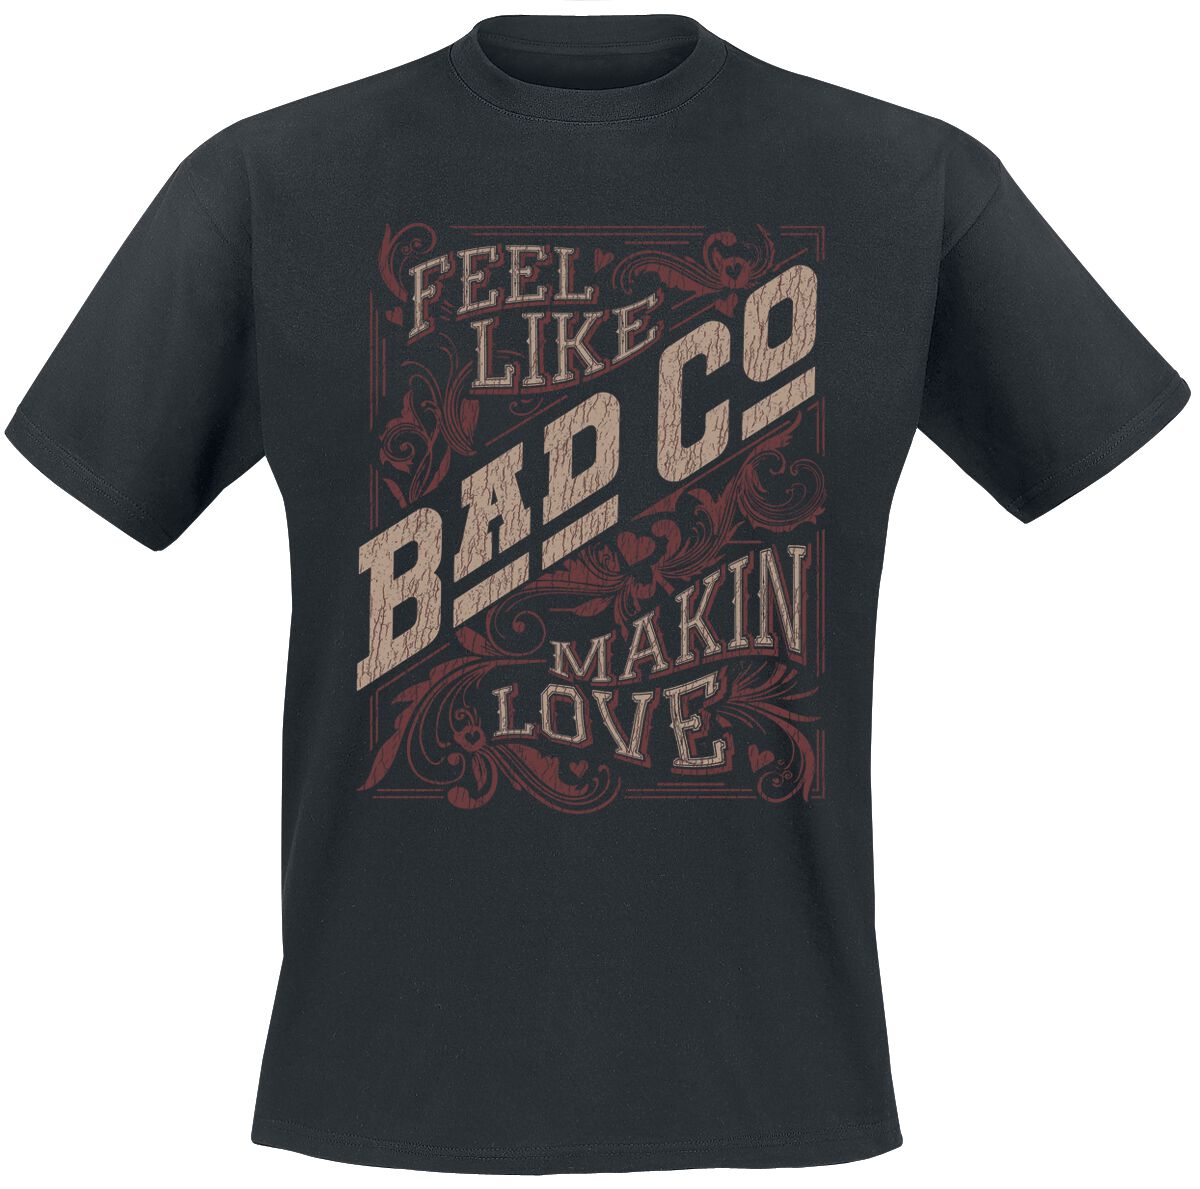 Bad Company T-Shirt - Makin Love - S bis XXL - für Männer - Größe S - schwarz  - EMP exklusives Merchandise!